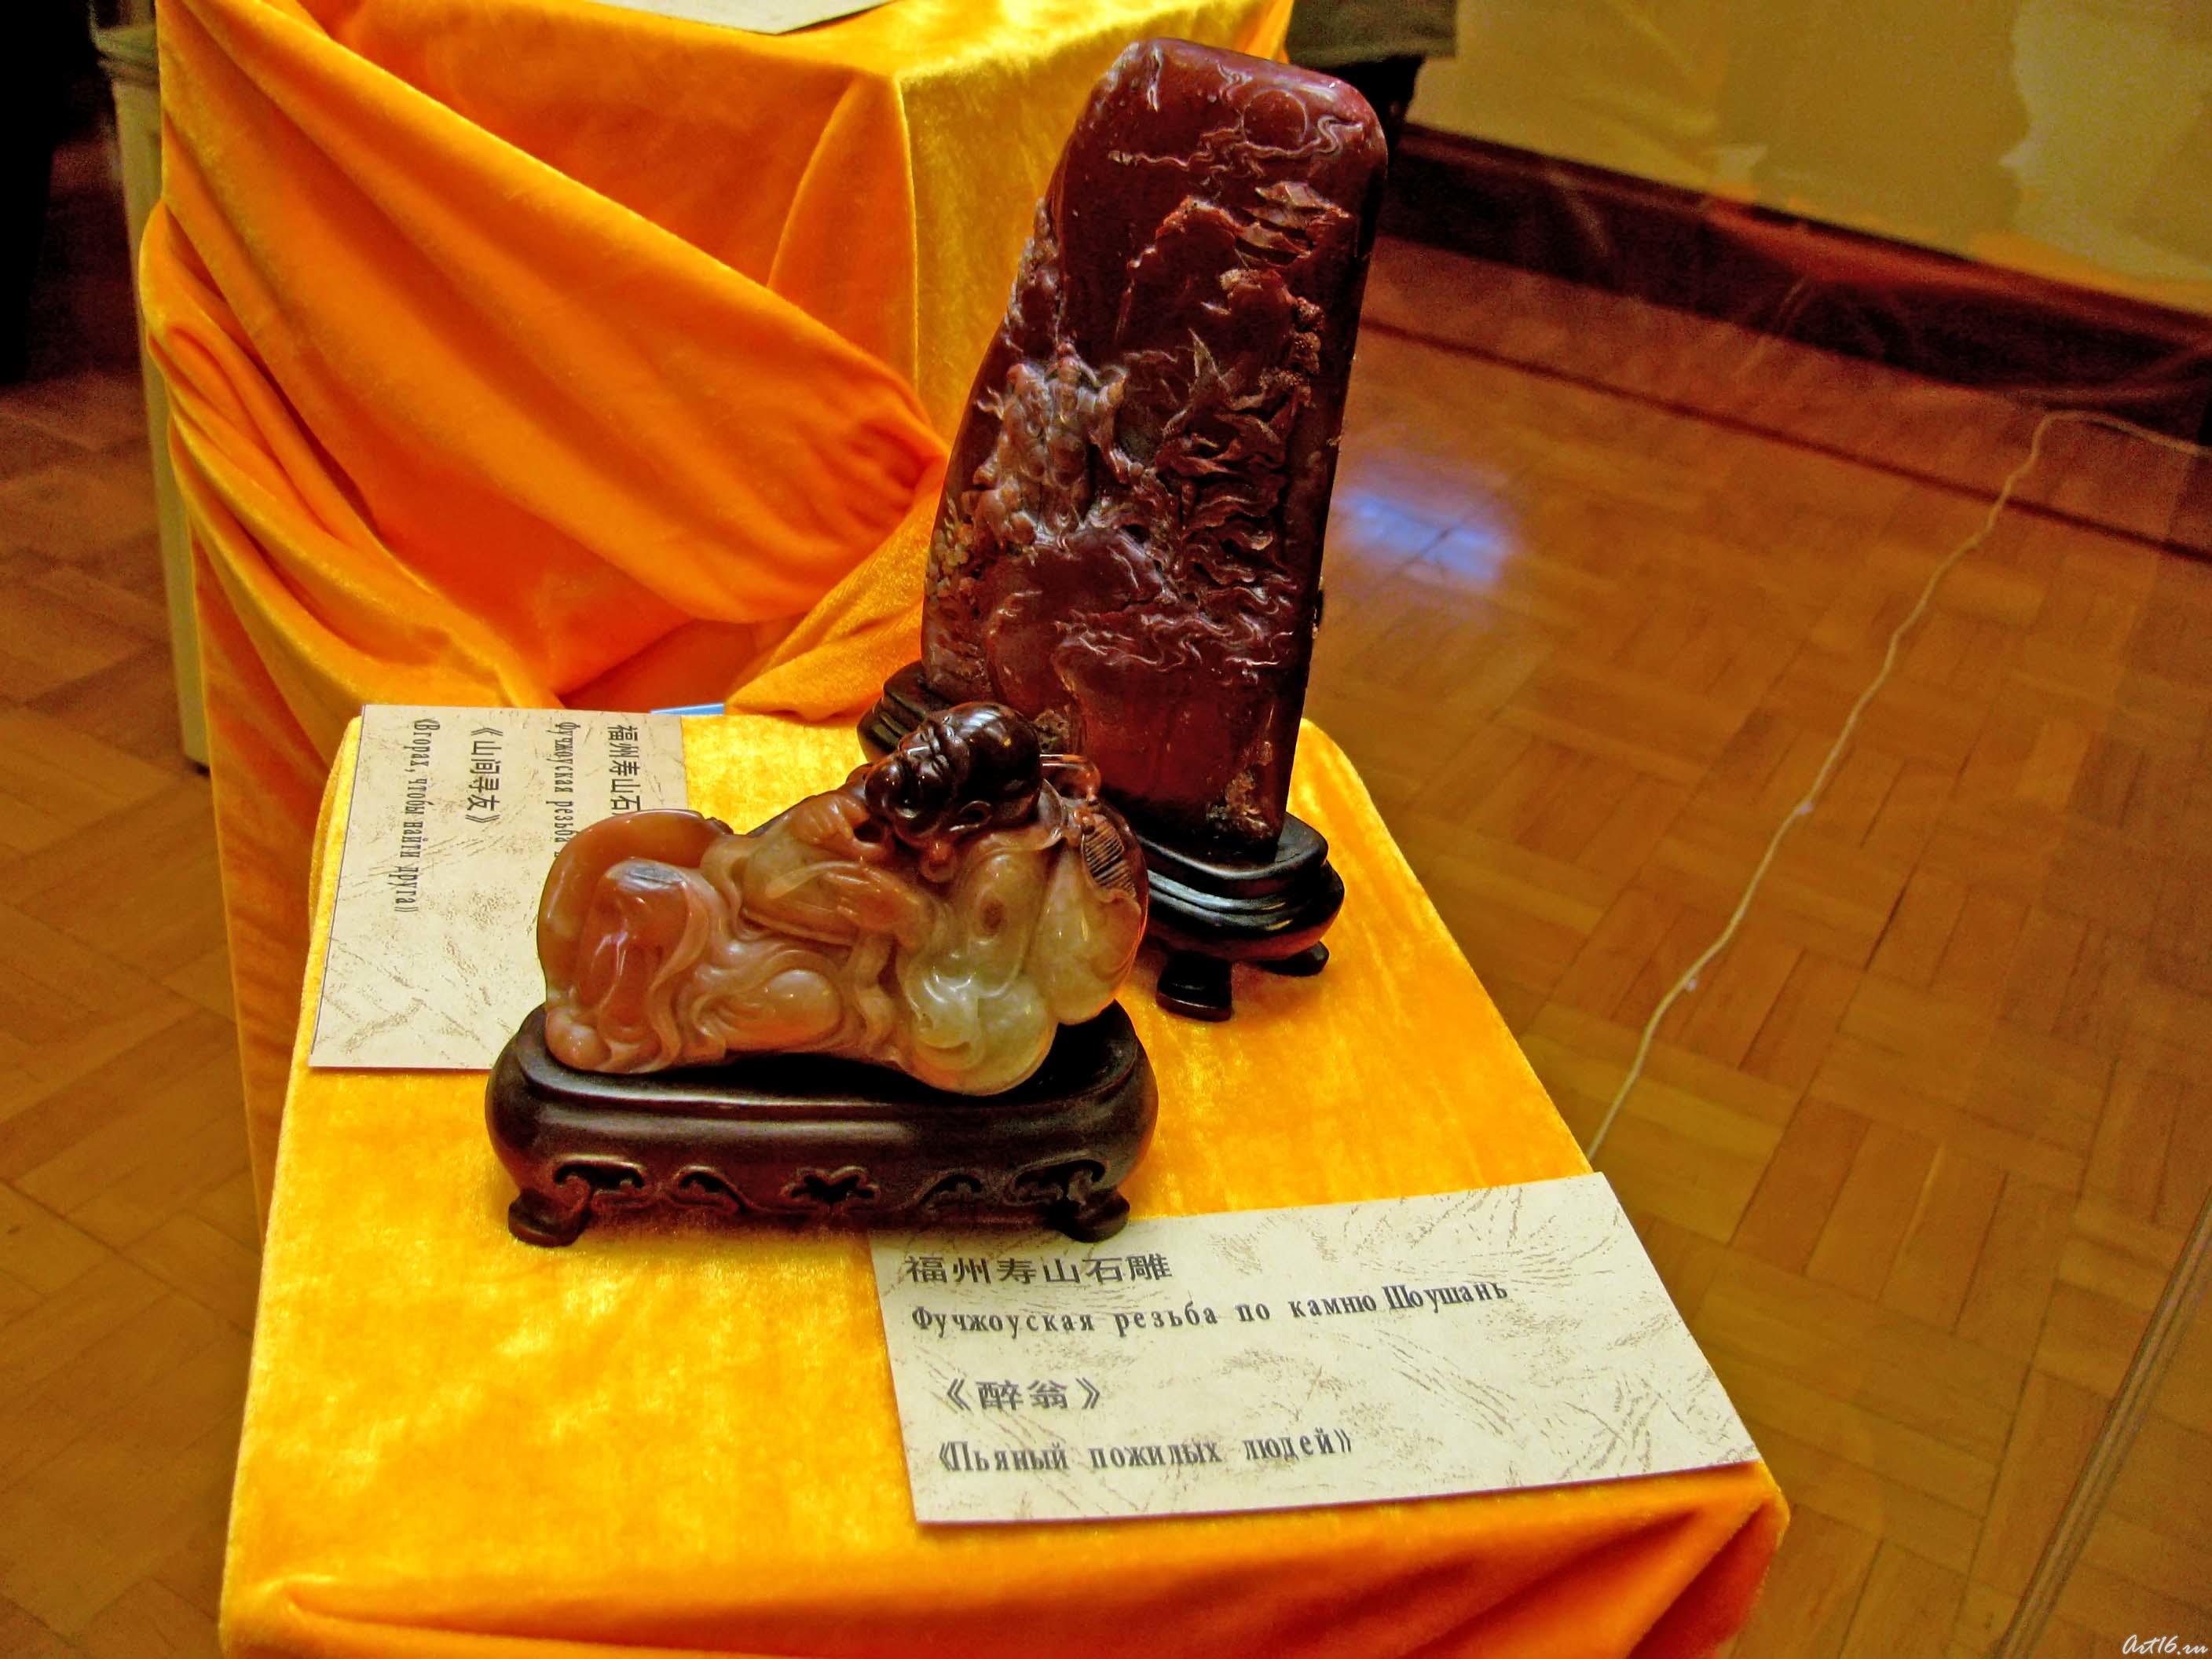 Фучжоуская резьба по камню::27.04.2009 выставка декоративно-прикладного искусства государств-членов ШОС